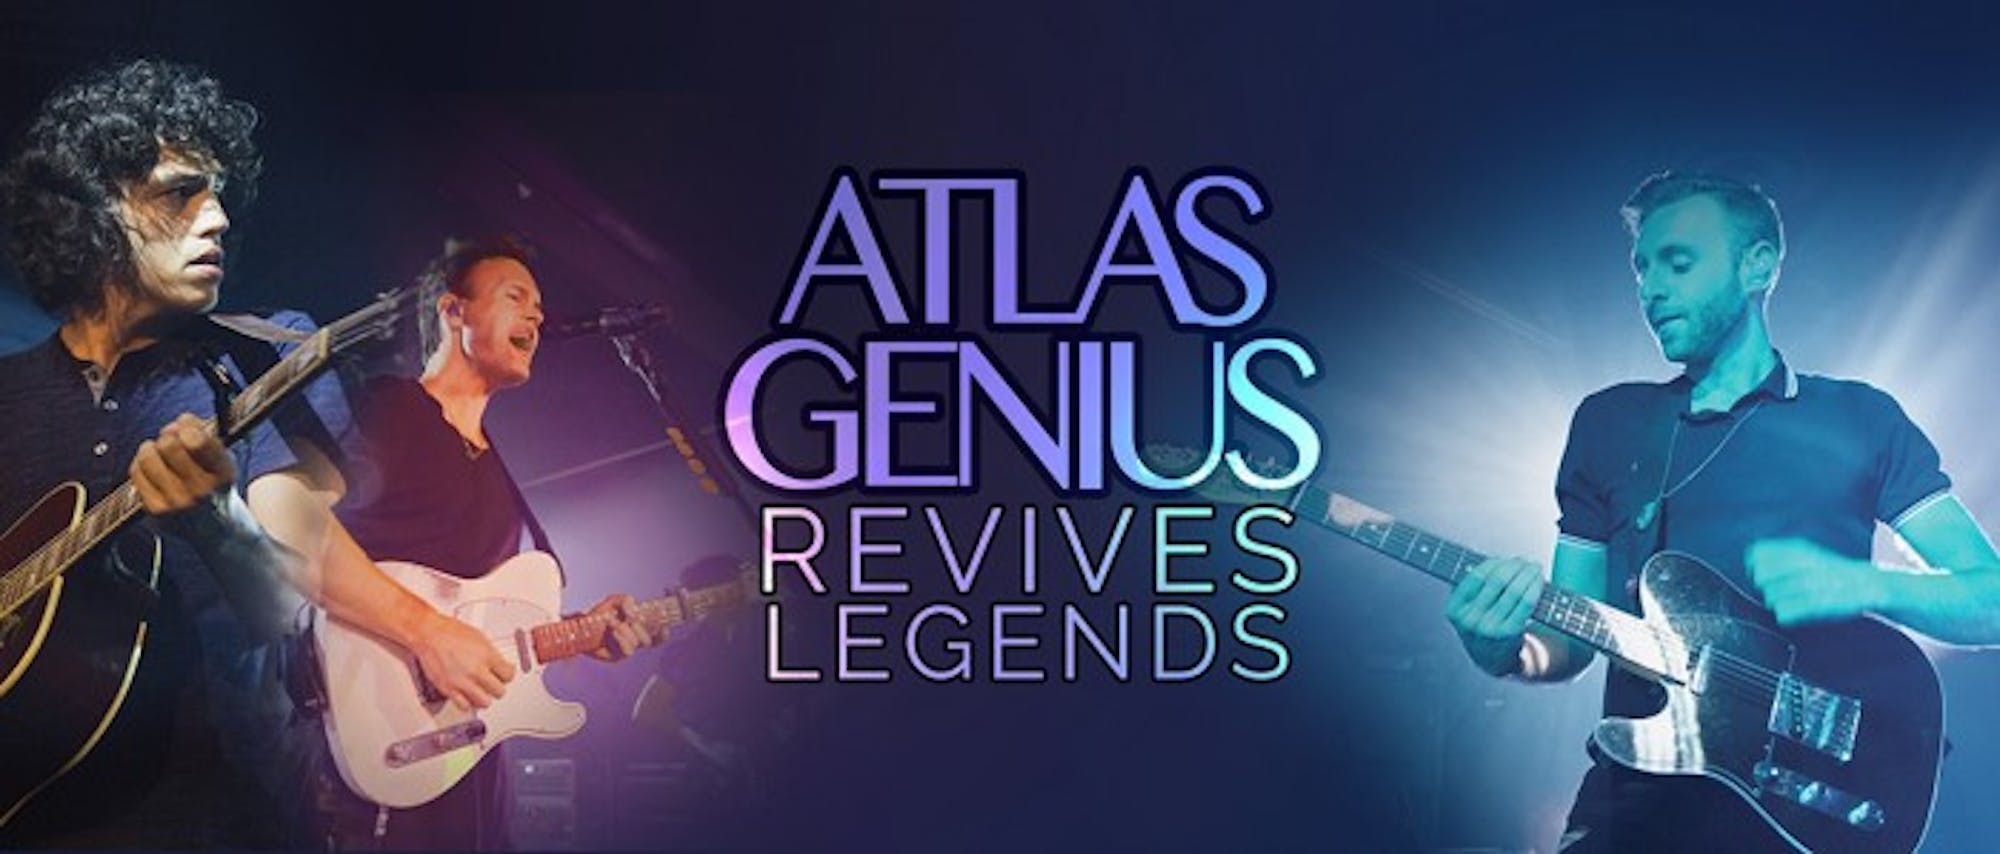 Atlas Genius Revives Legends_WEB